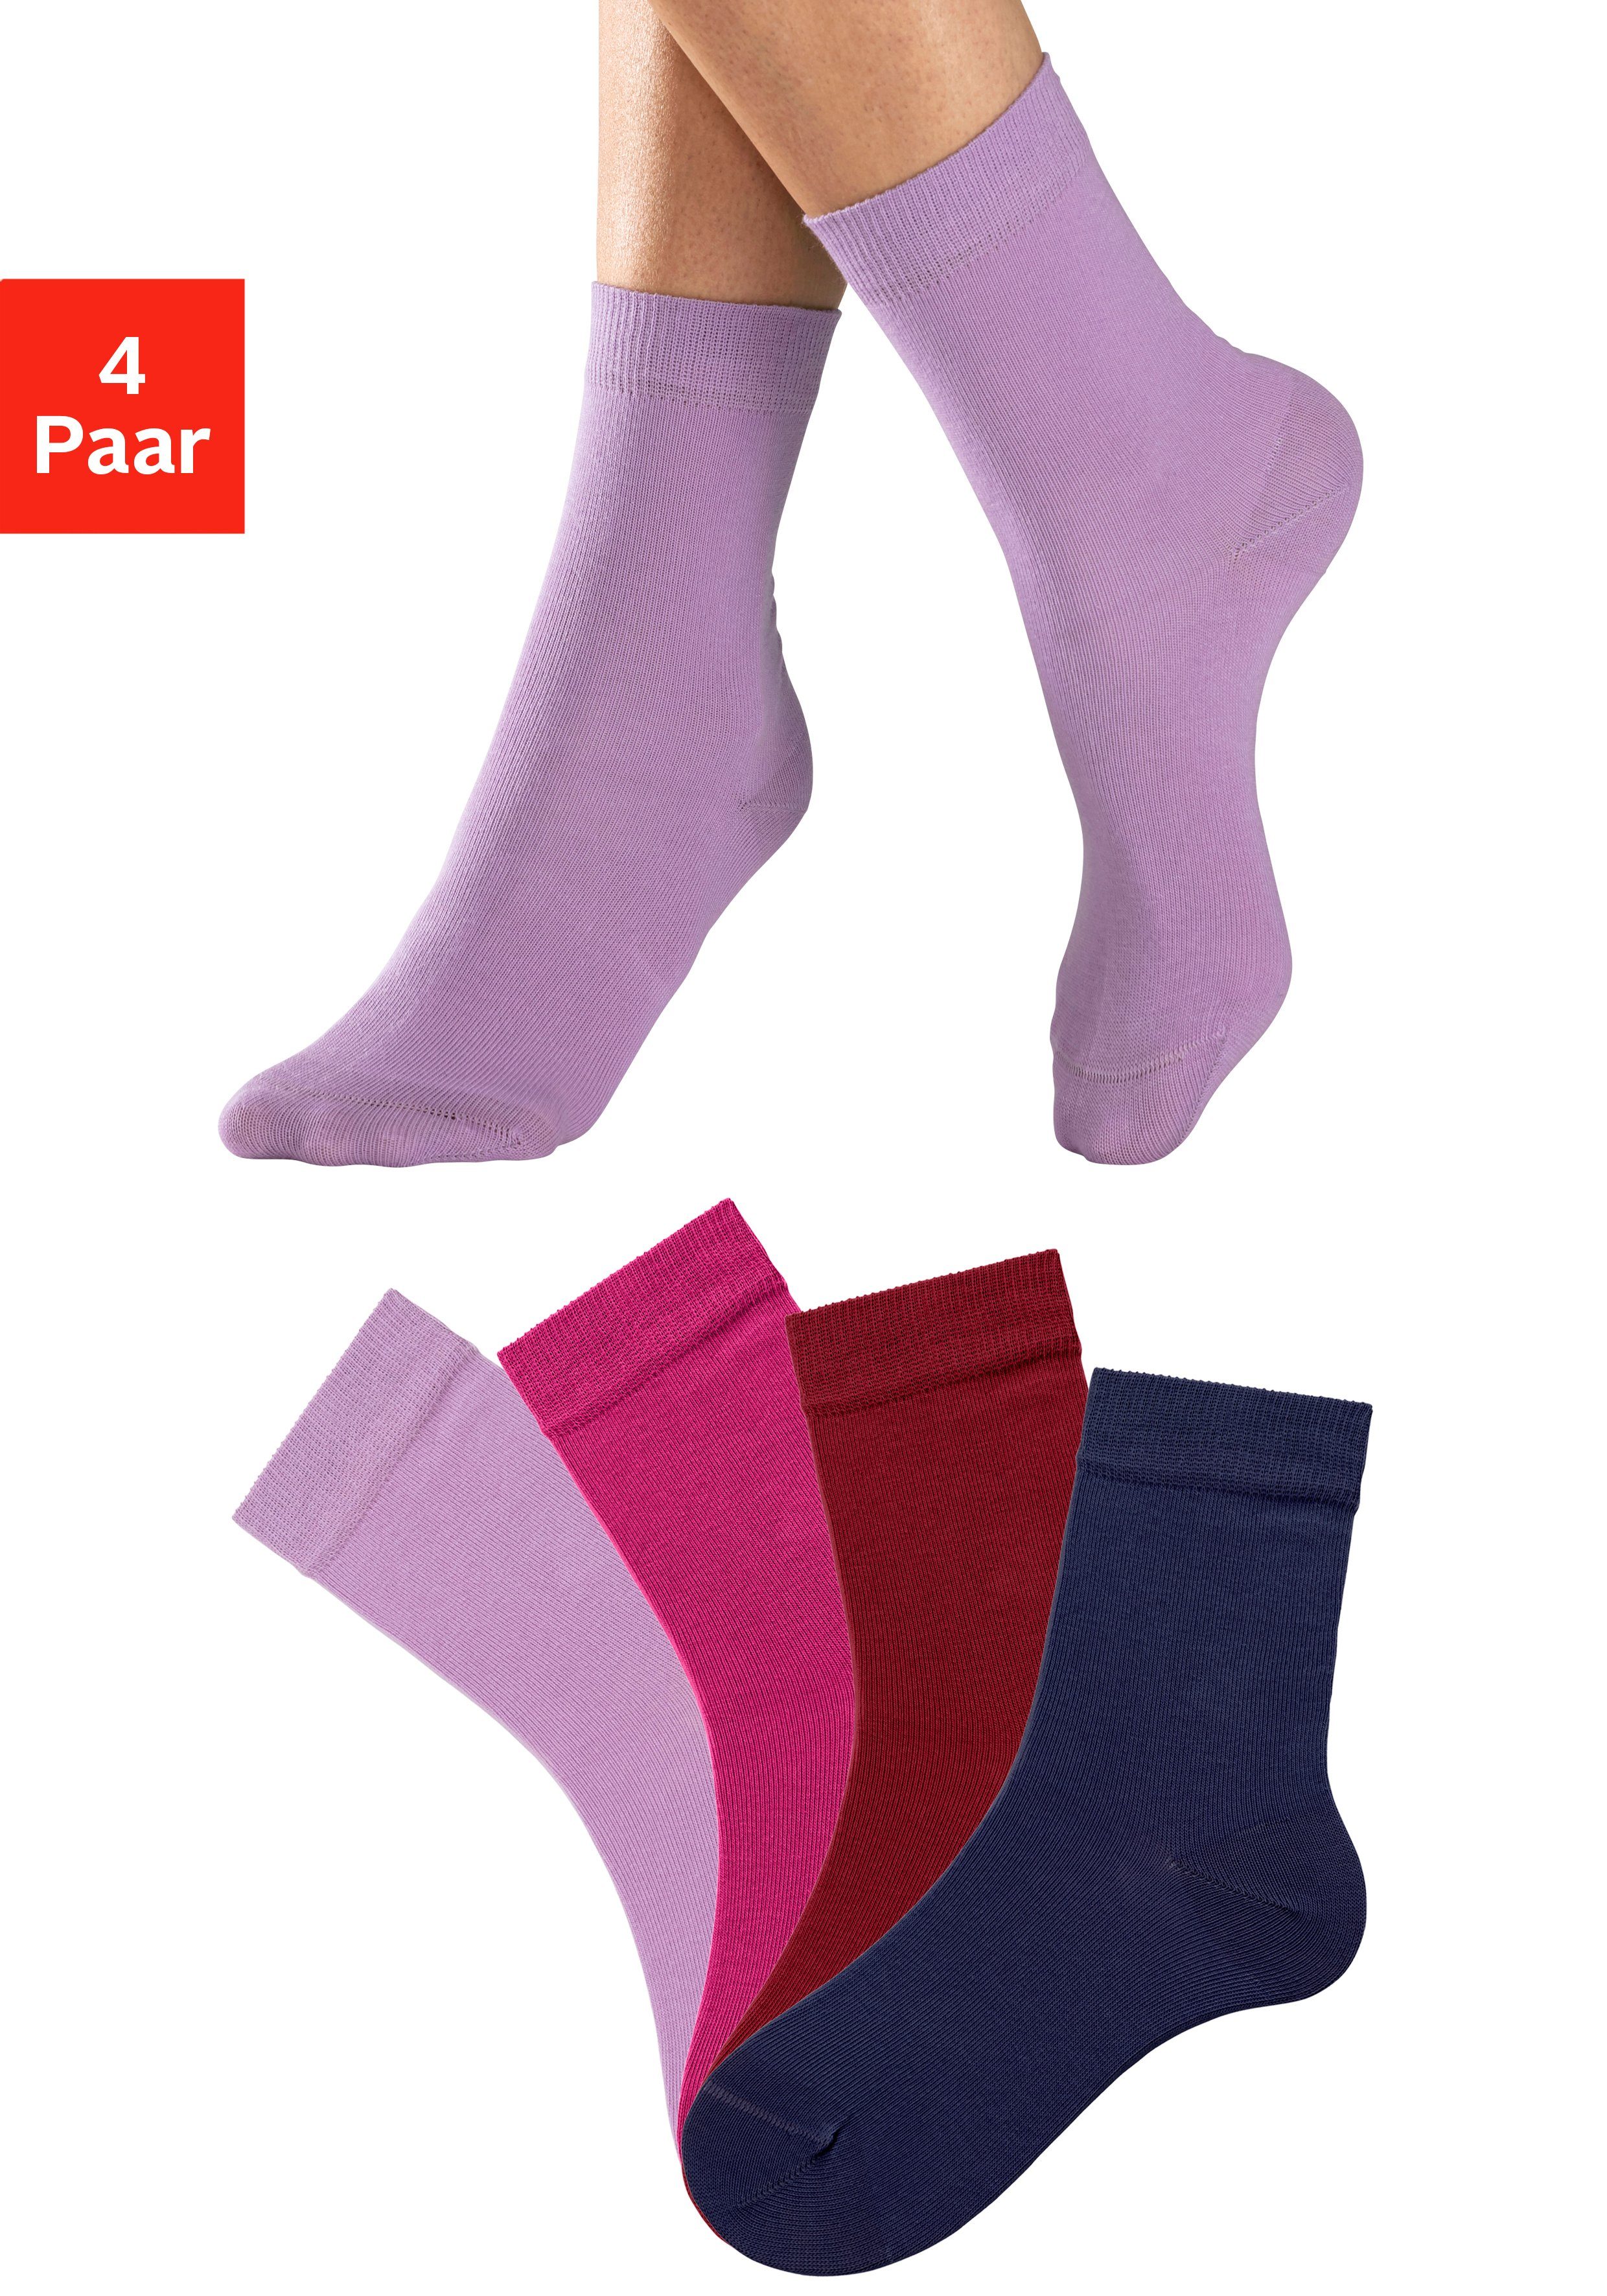 Super günstig H.I.S Socken blau, flieder, 1x 1x pink, 1x Farbzusammenstellungen 4-Paar) (Set, unterschiedlichen 1x in bordeaux